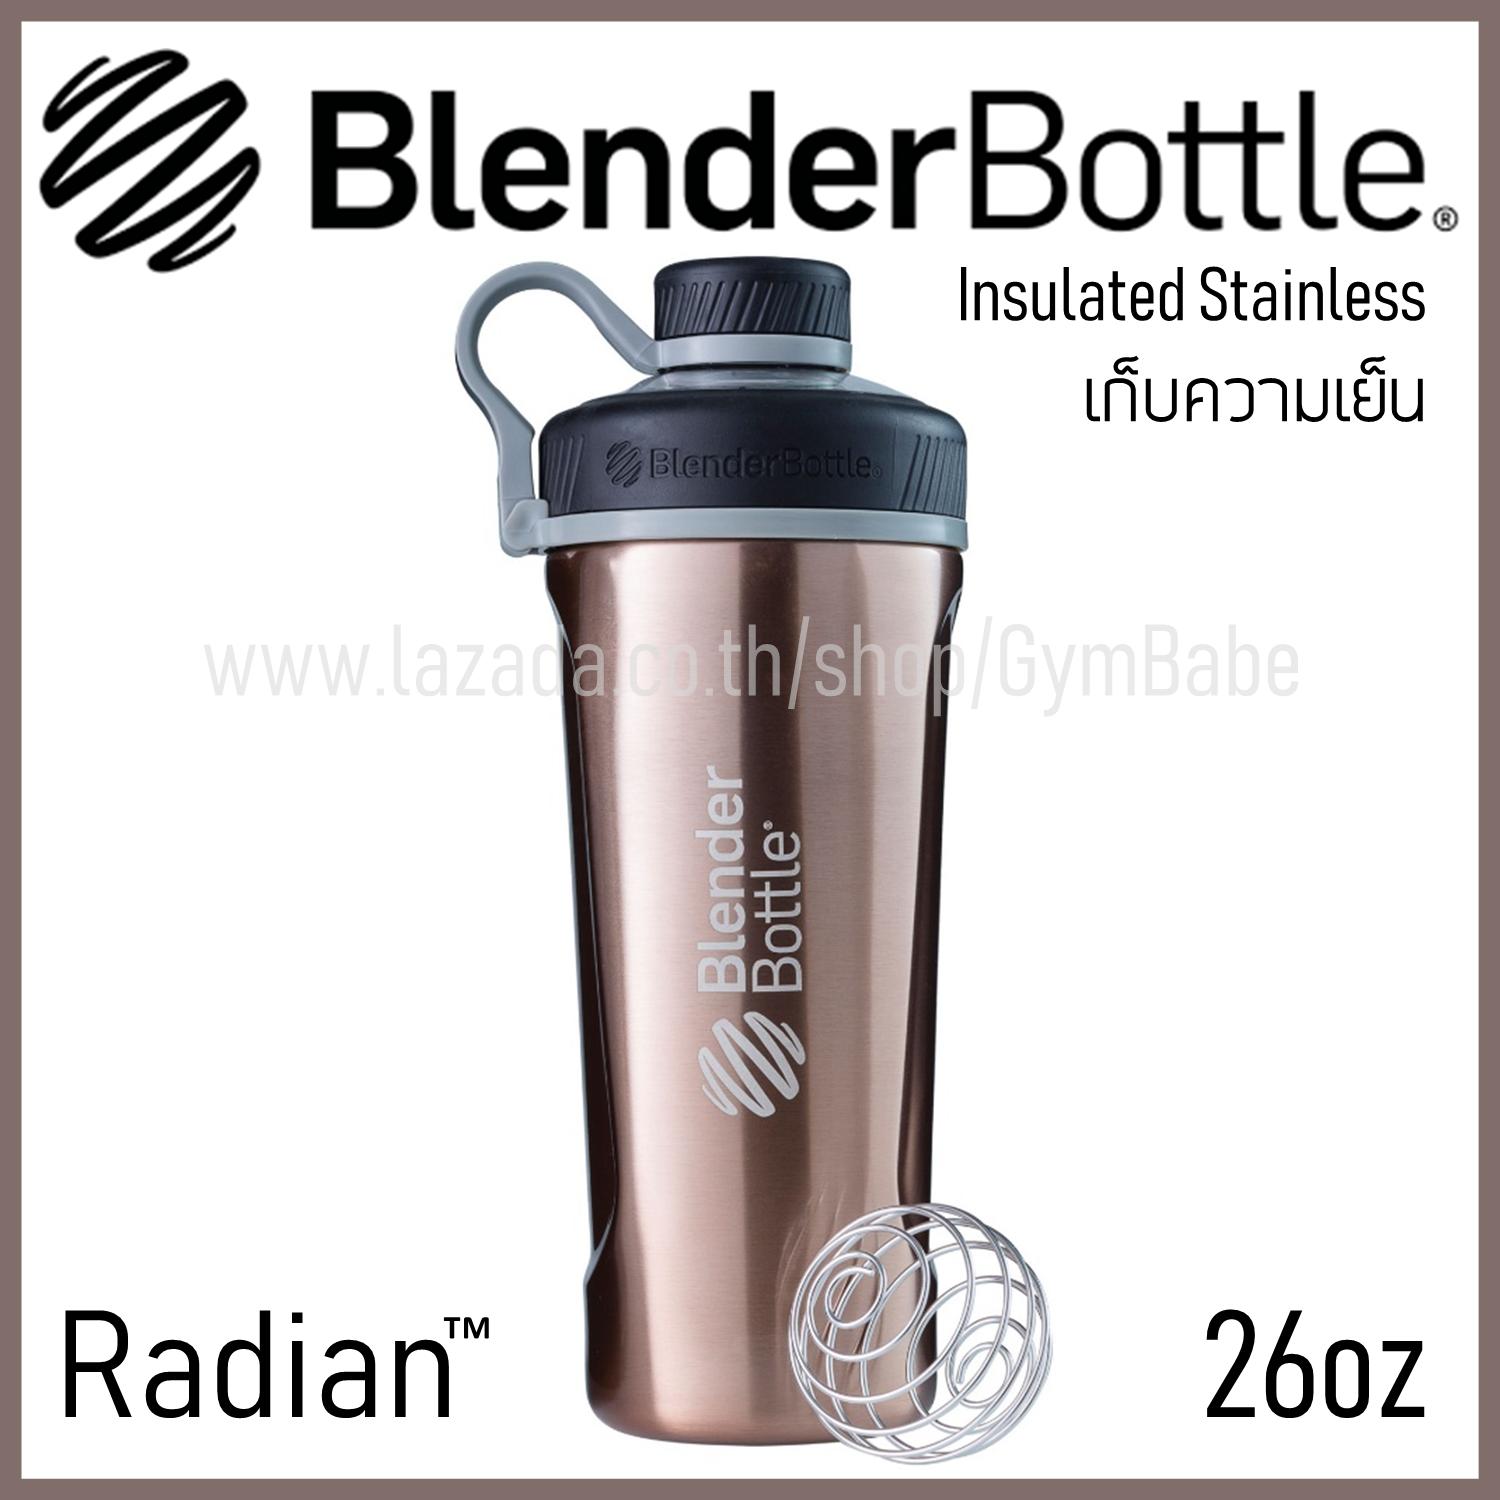 (สีCopper) BlenderBottle Radian Insulated Stainless Steel แก้วShakeเก็บความเย็นได้ ของแท้ นำเข้าจากอเมริกา